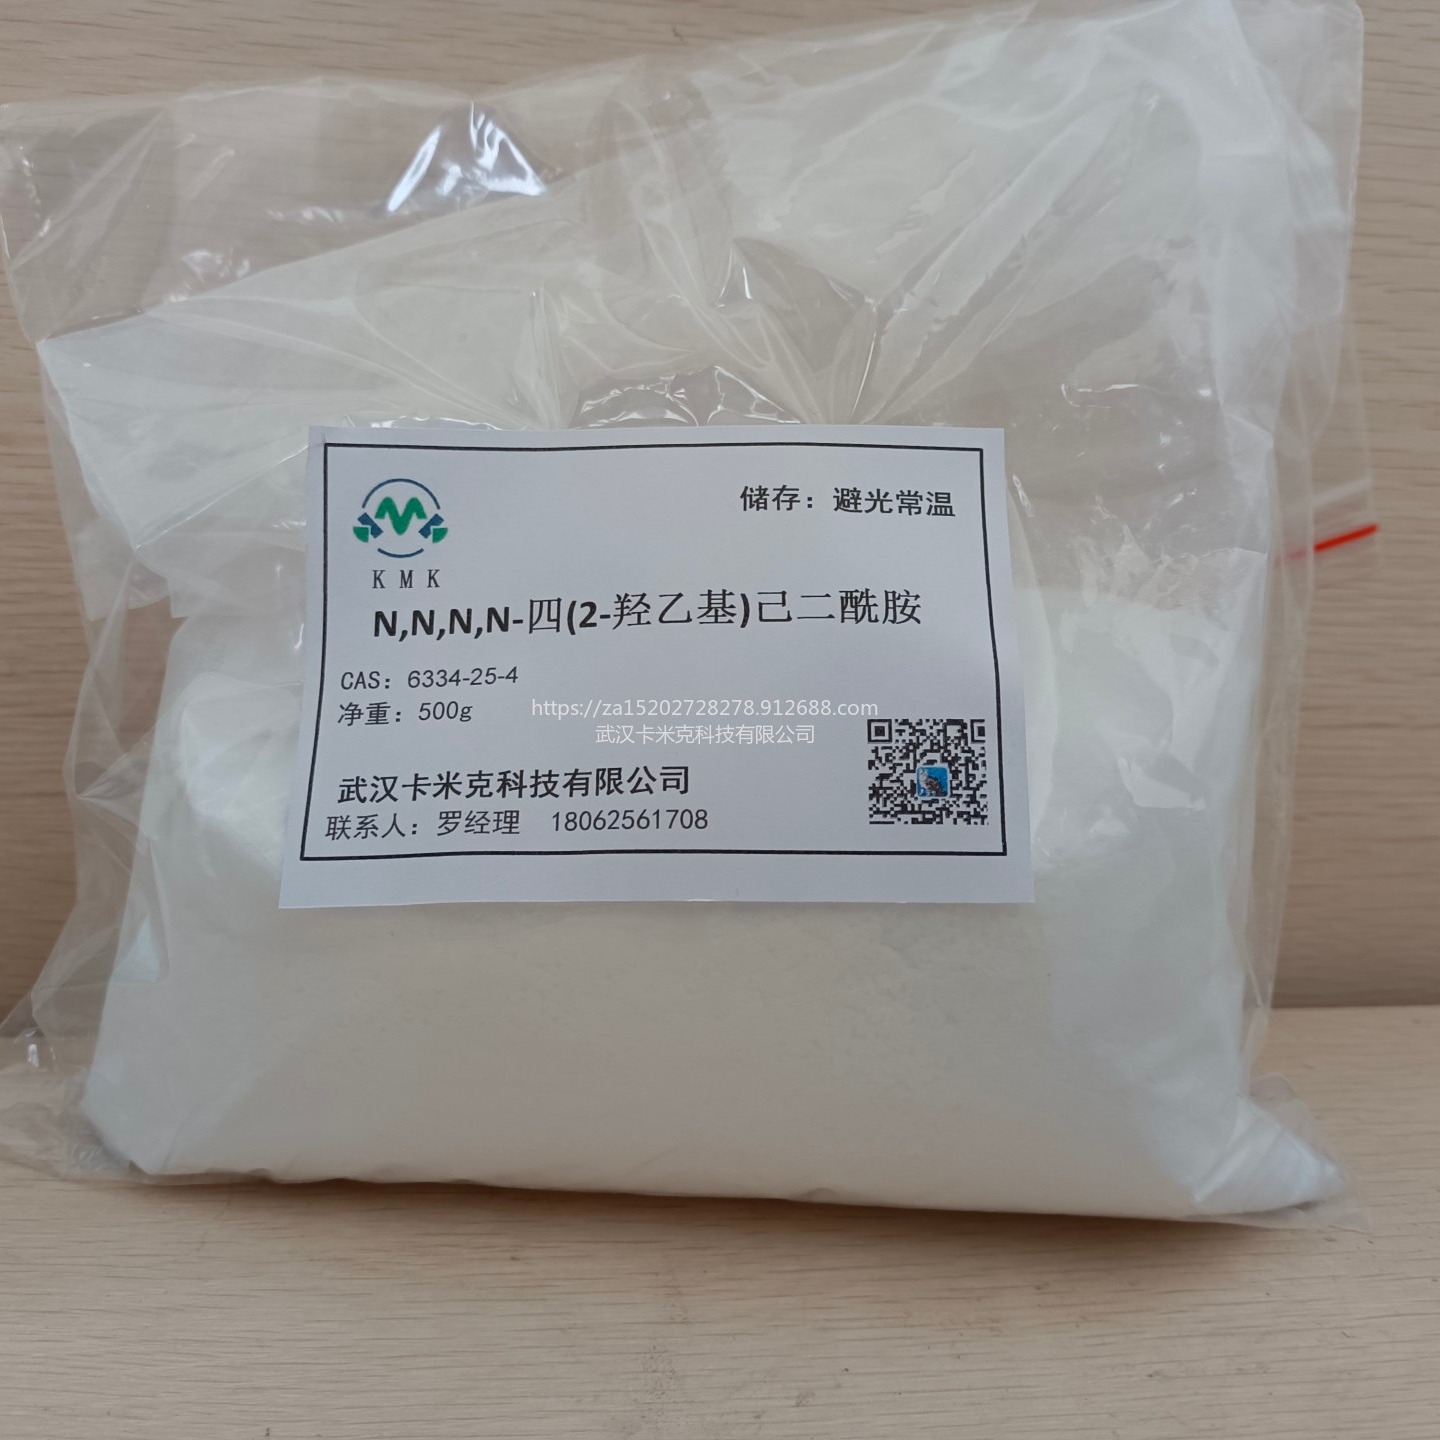 羟烷基酰胺（HAA） 聚酯固化剂 6334-25-4 厂家 kmk粉末涂料固化剂图片